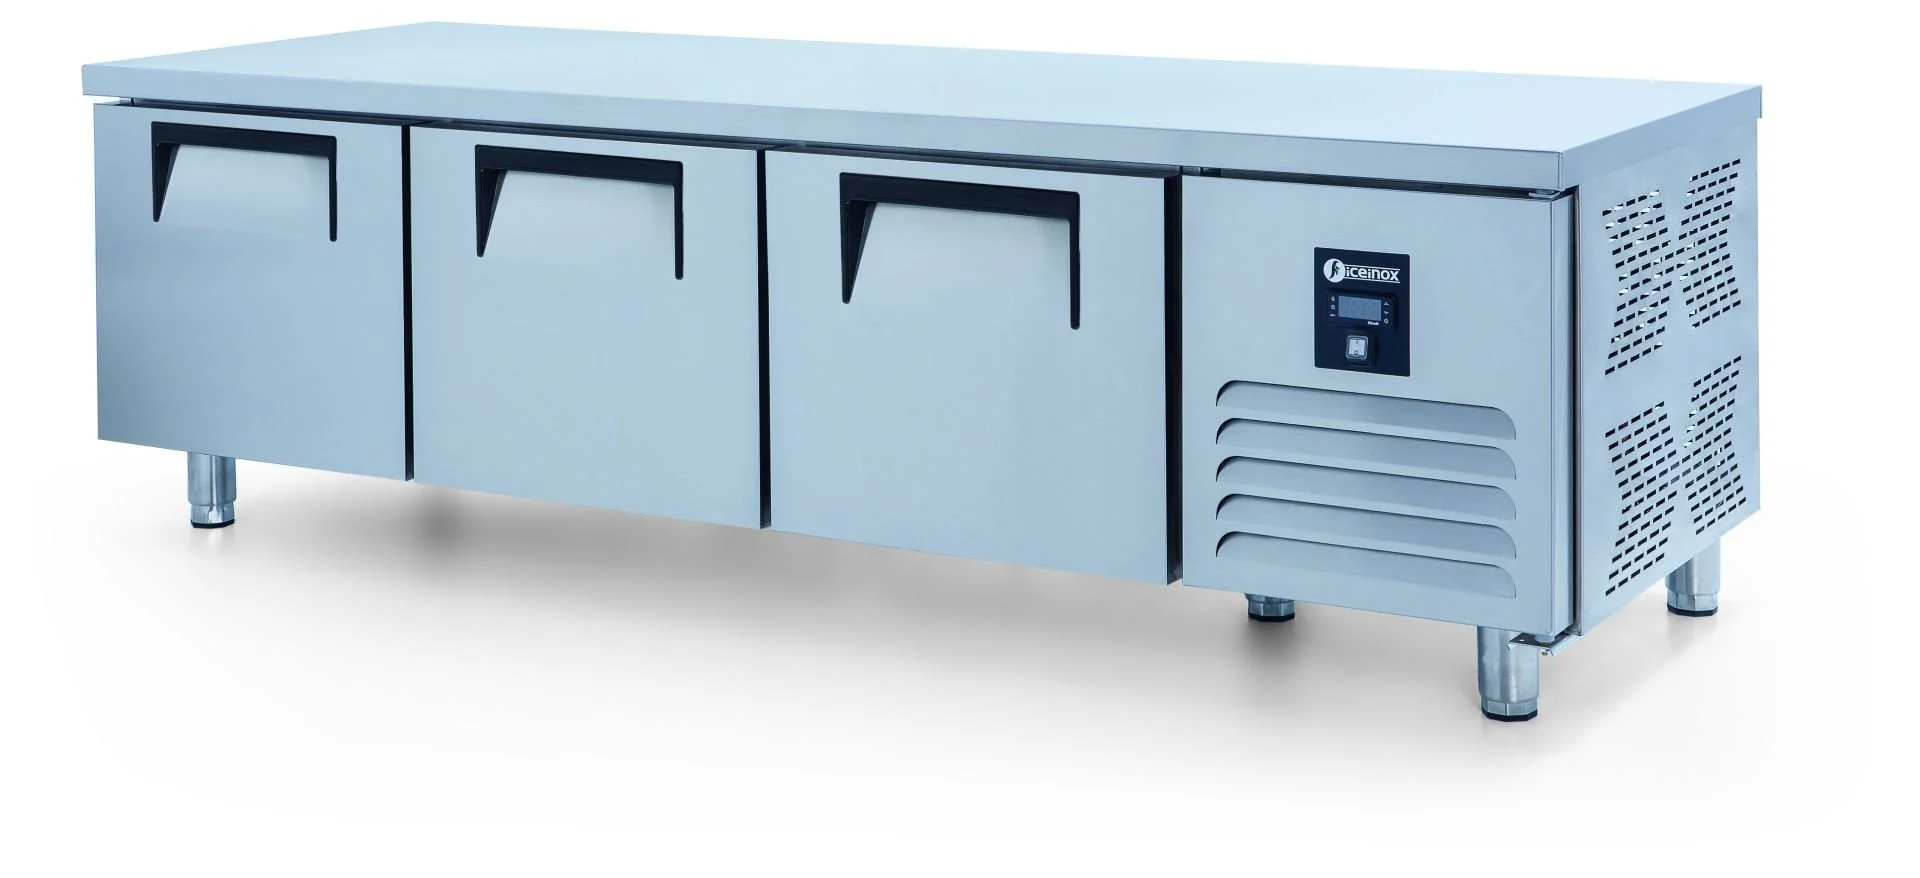 ICEINOX - Iceinox UTS 330 CR Pişirici Altı Buzdolabı, 3 Kapılı, 330 L